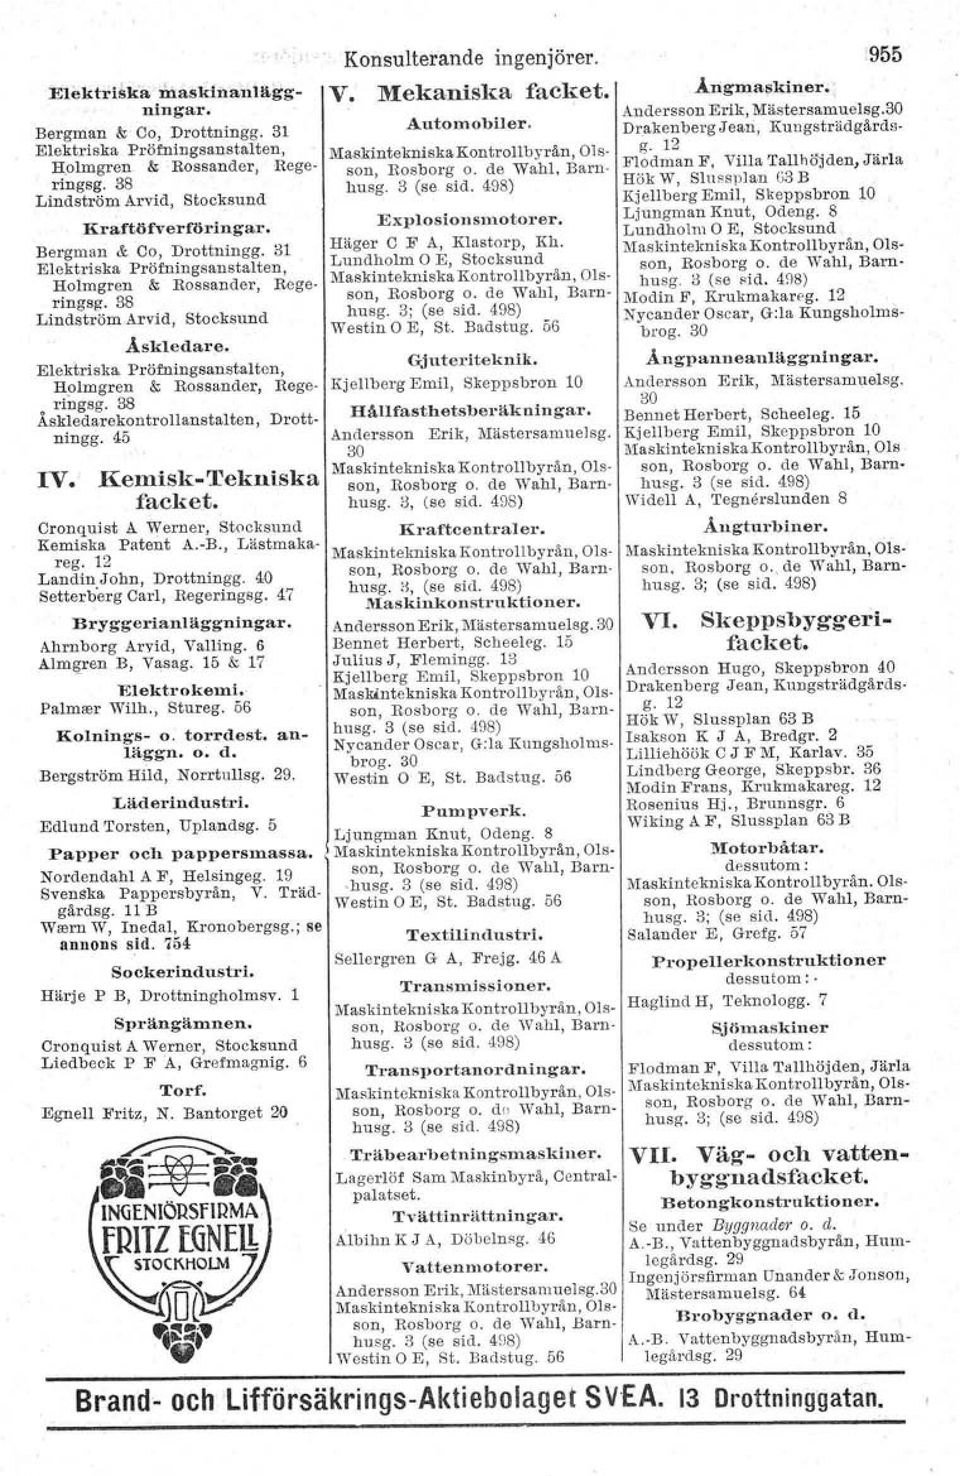 olmgren & Ros sander, Regeo ringsg. 38 Askledarekontrollanstaiten, Drottningg. 45 IV. Kemisk-Tekniska facket. Cranquist A. Werner, Stockauud Kemiska Patent A.-B.